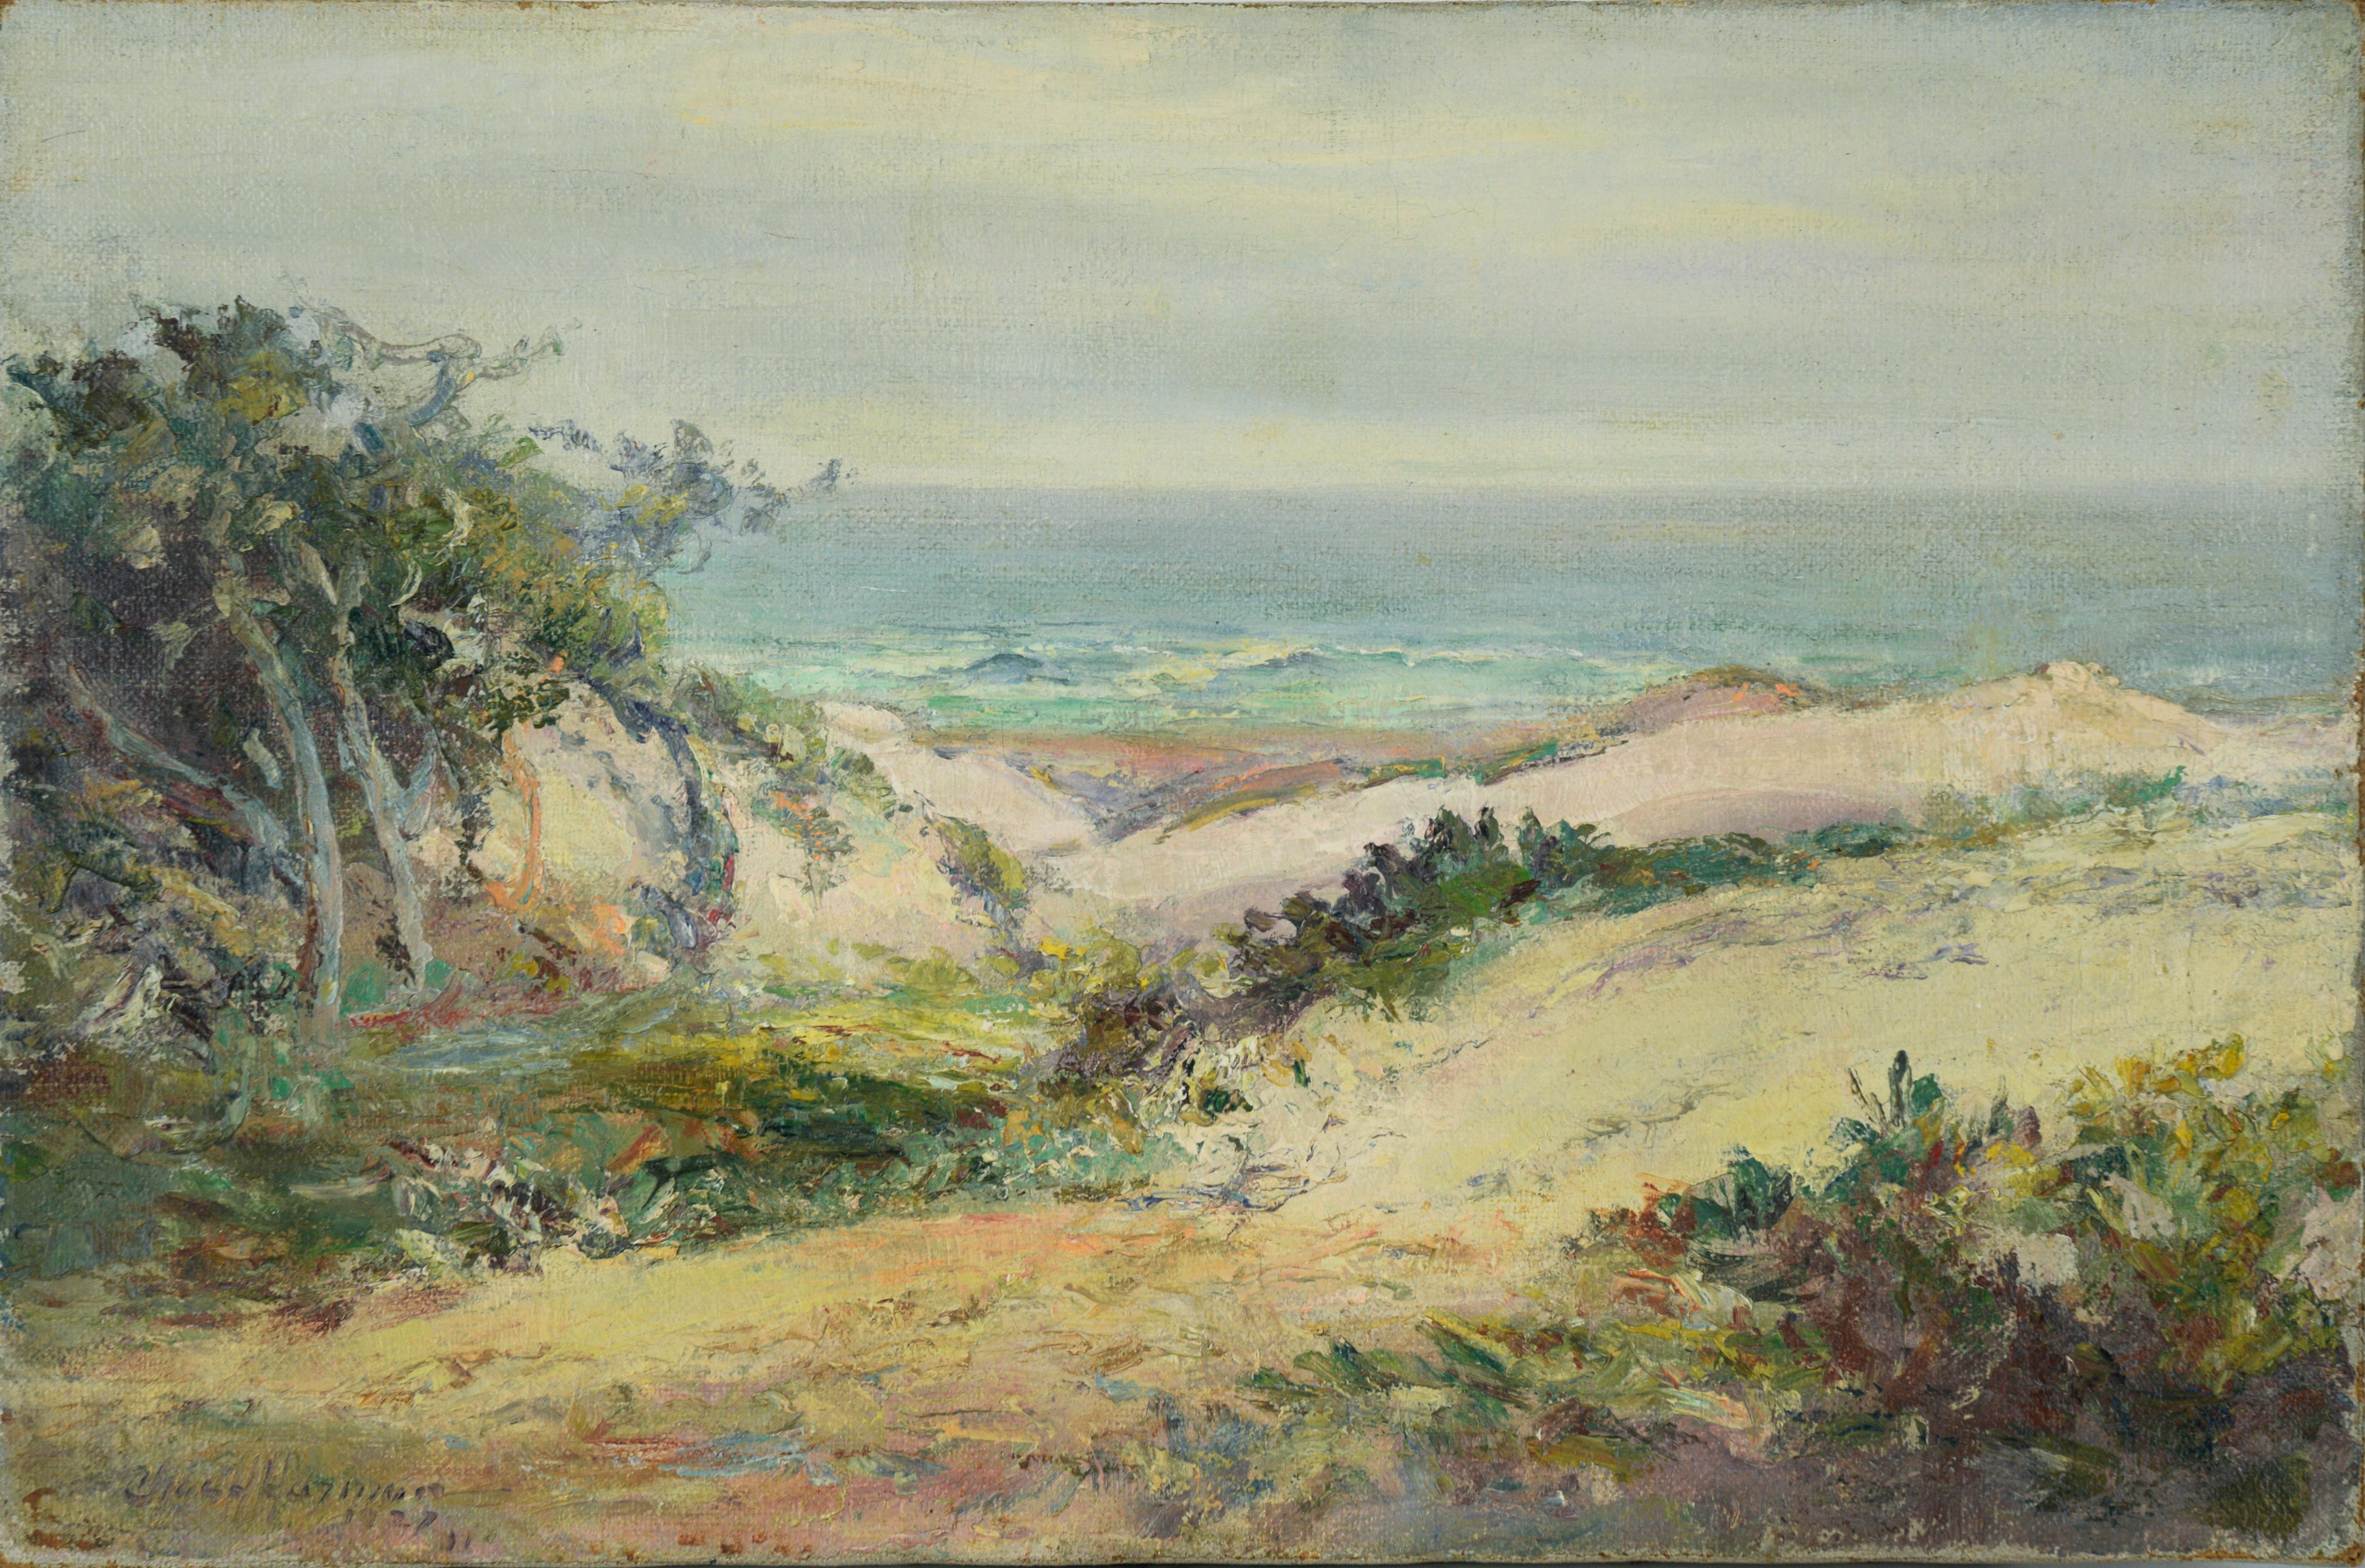 1927 Carmel by the Sea - Beach, California Coastline - Oil on Linen